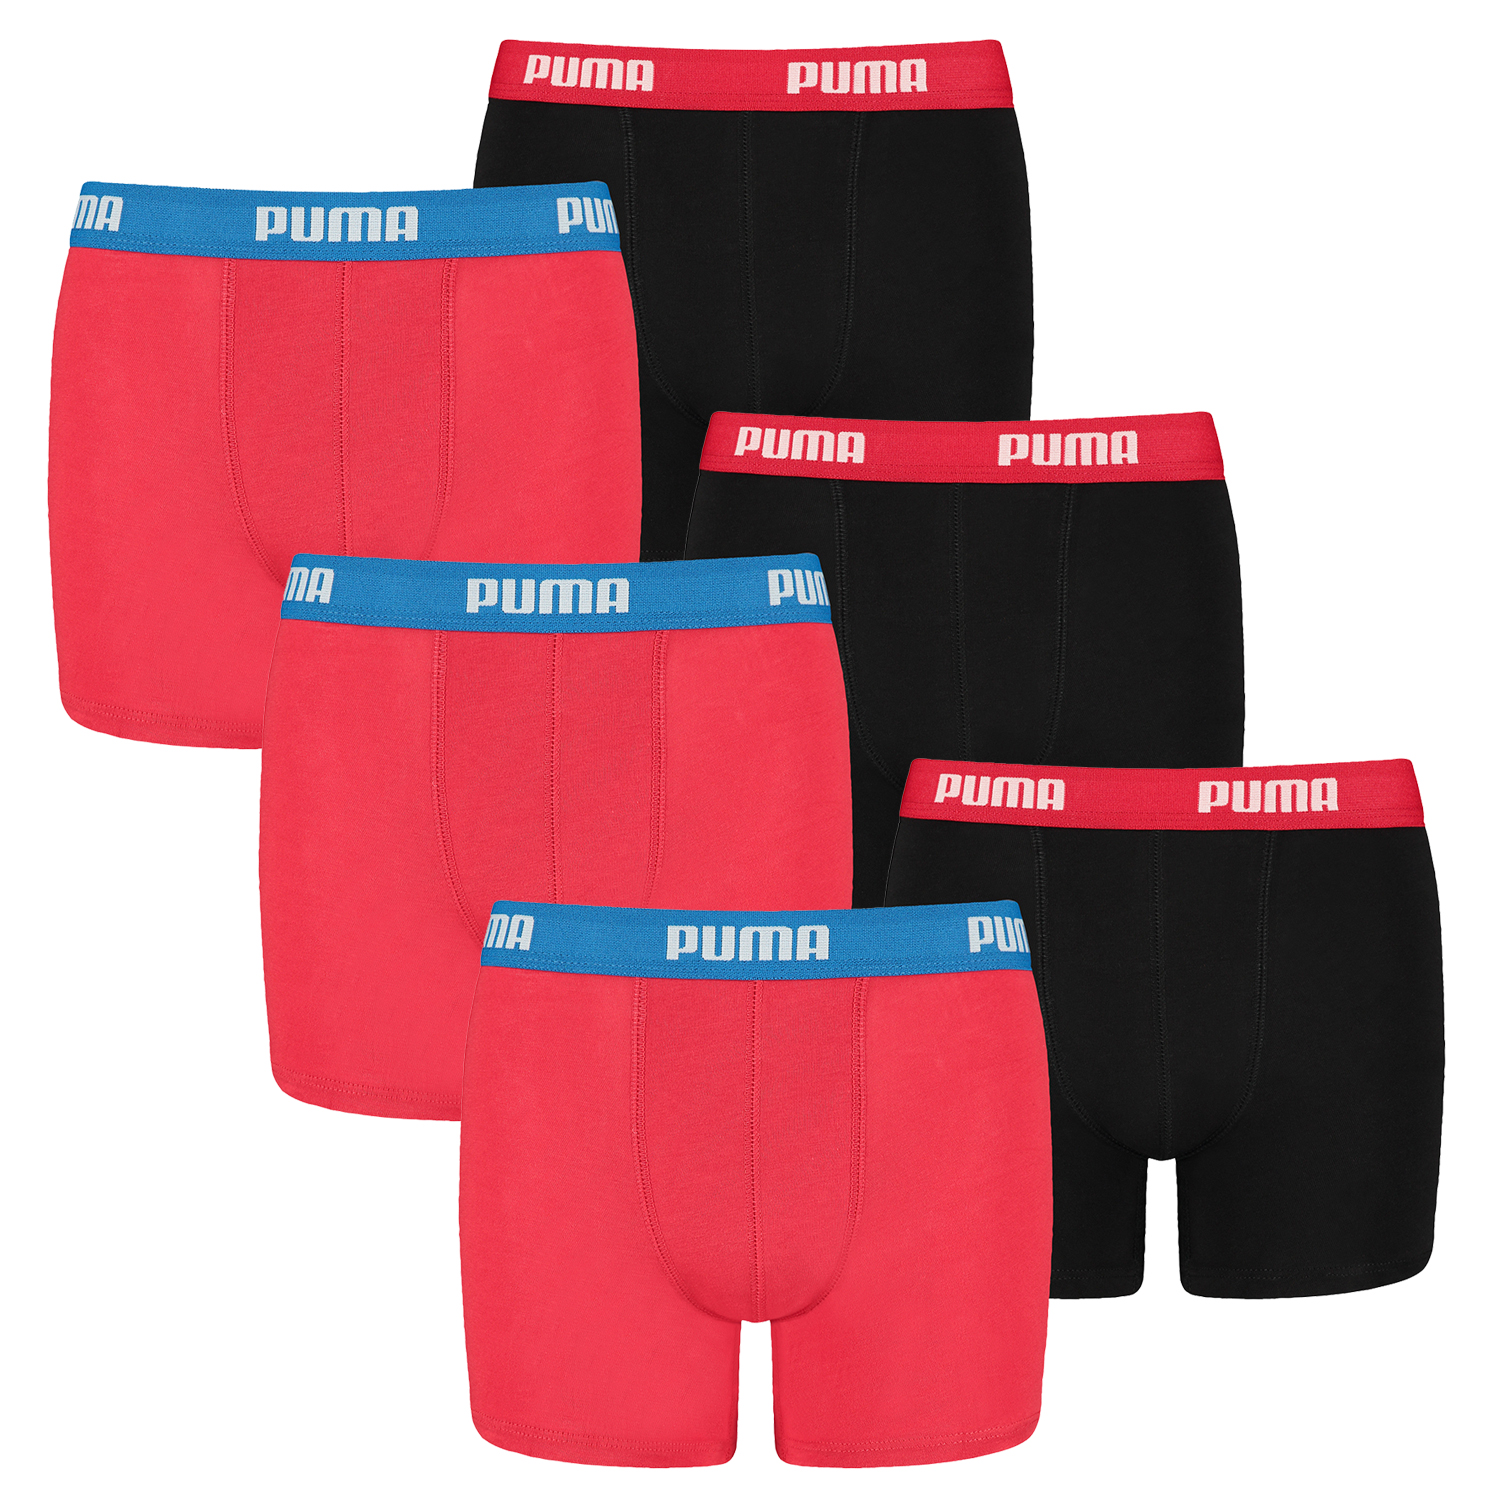 6 er Pack Puma Boxer Boxershorts Jungen Kinder Unterhose Unterwäsche